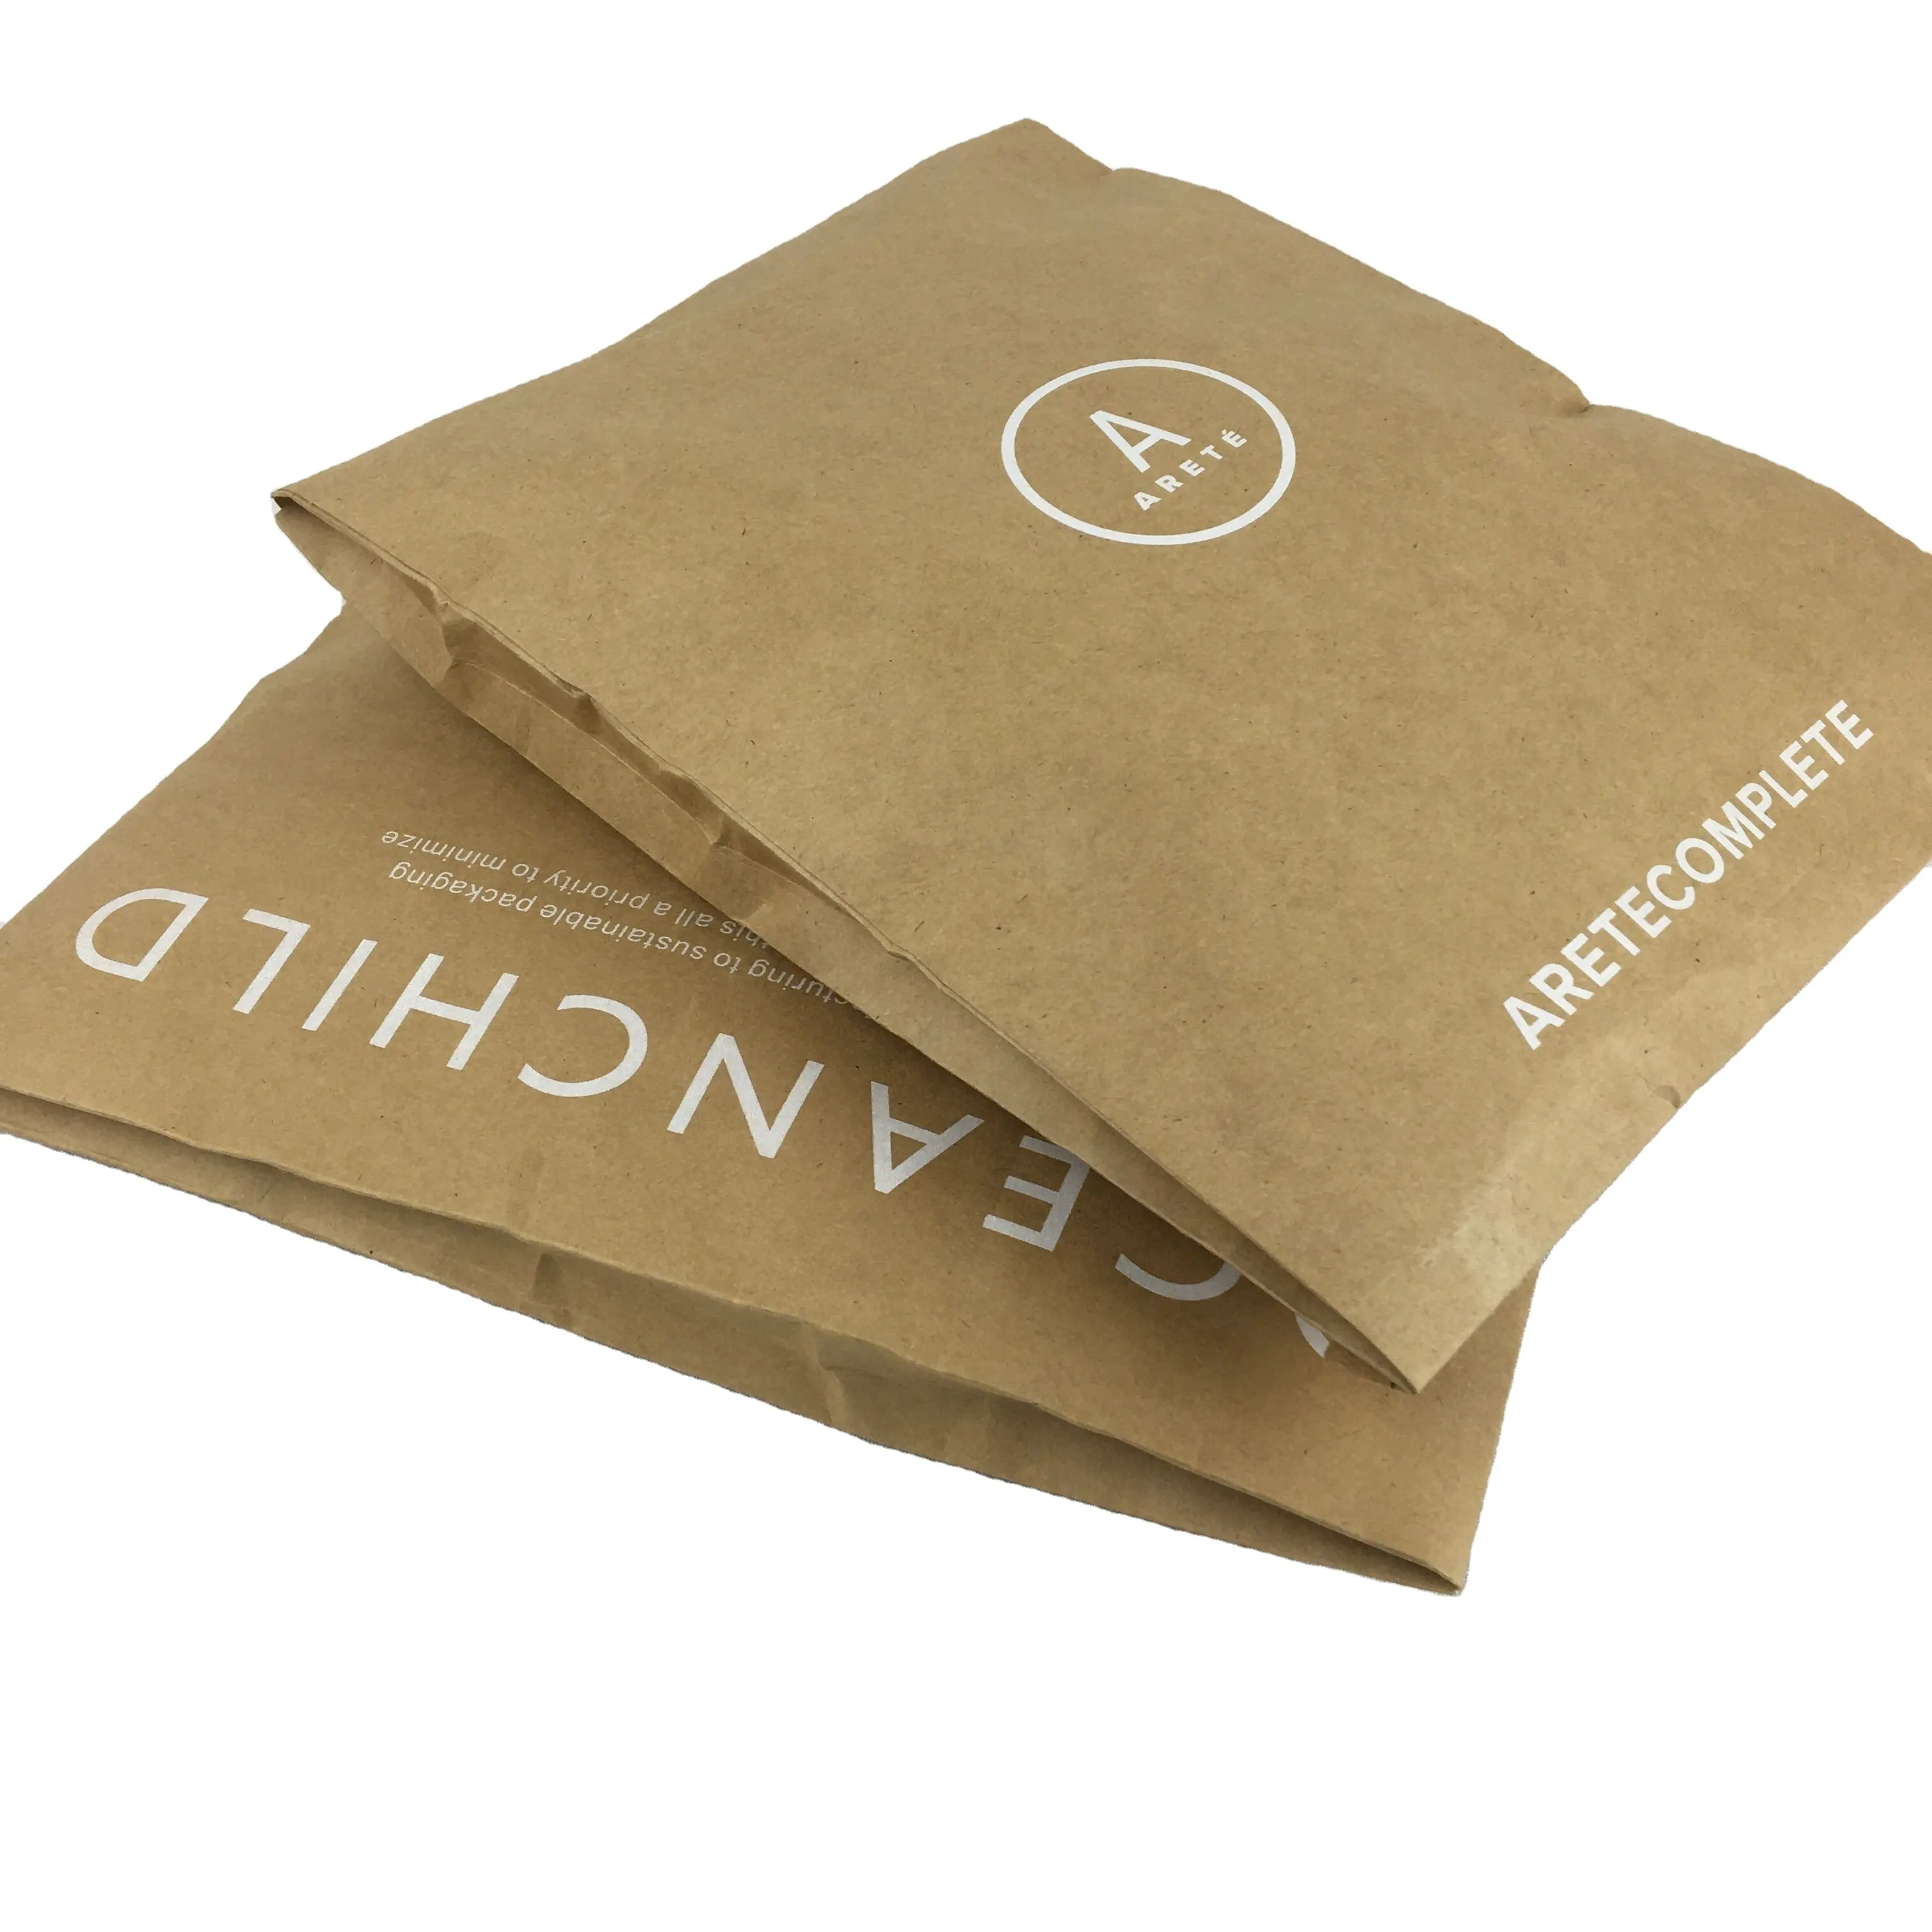 Ecycled-Bolsa de envío de Papel kraft con impresión de tinta blanca, bolsa de mensajería expandible para zapatos y ropa de correo